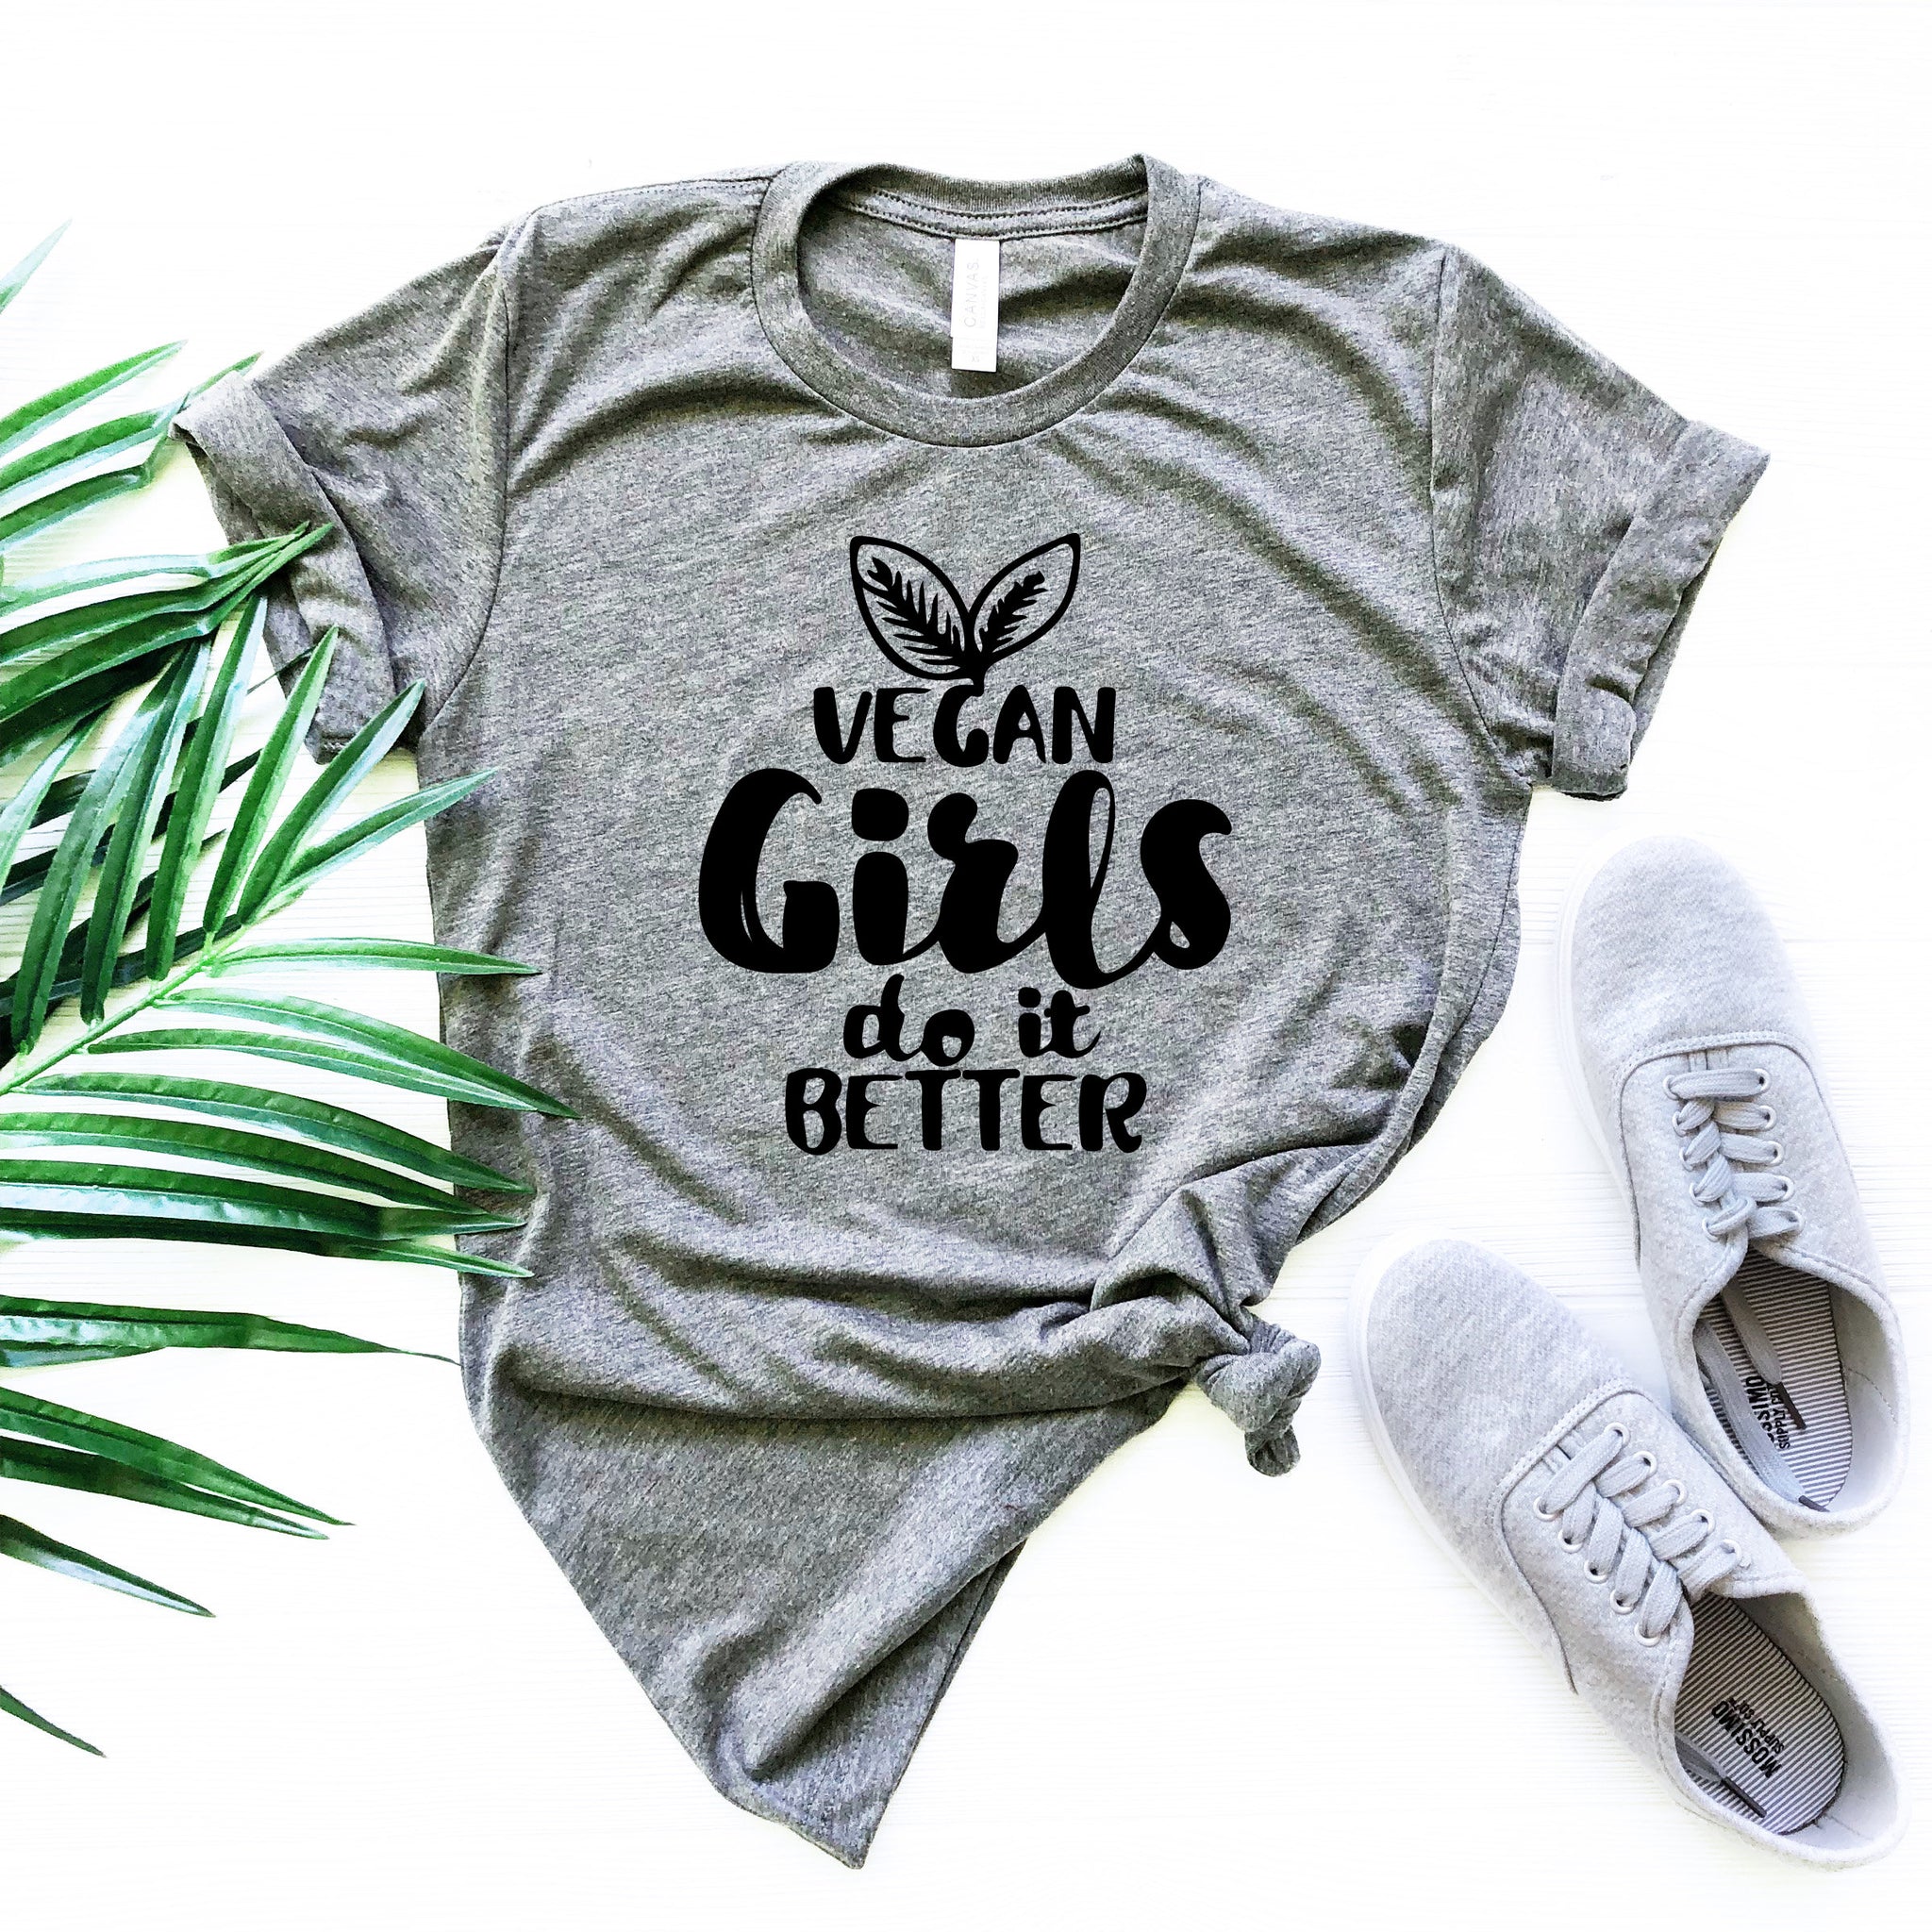 Vegan Girls do It Better, Vegan Gift,Vegan Shirt,Vegan T Shirt,Vegan T-Shirts,Veganism,Vegetarian Gift,Funny Vegan Shirt - Fastdeliverytees.com